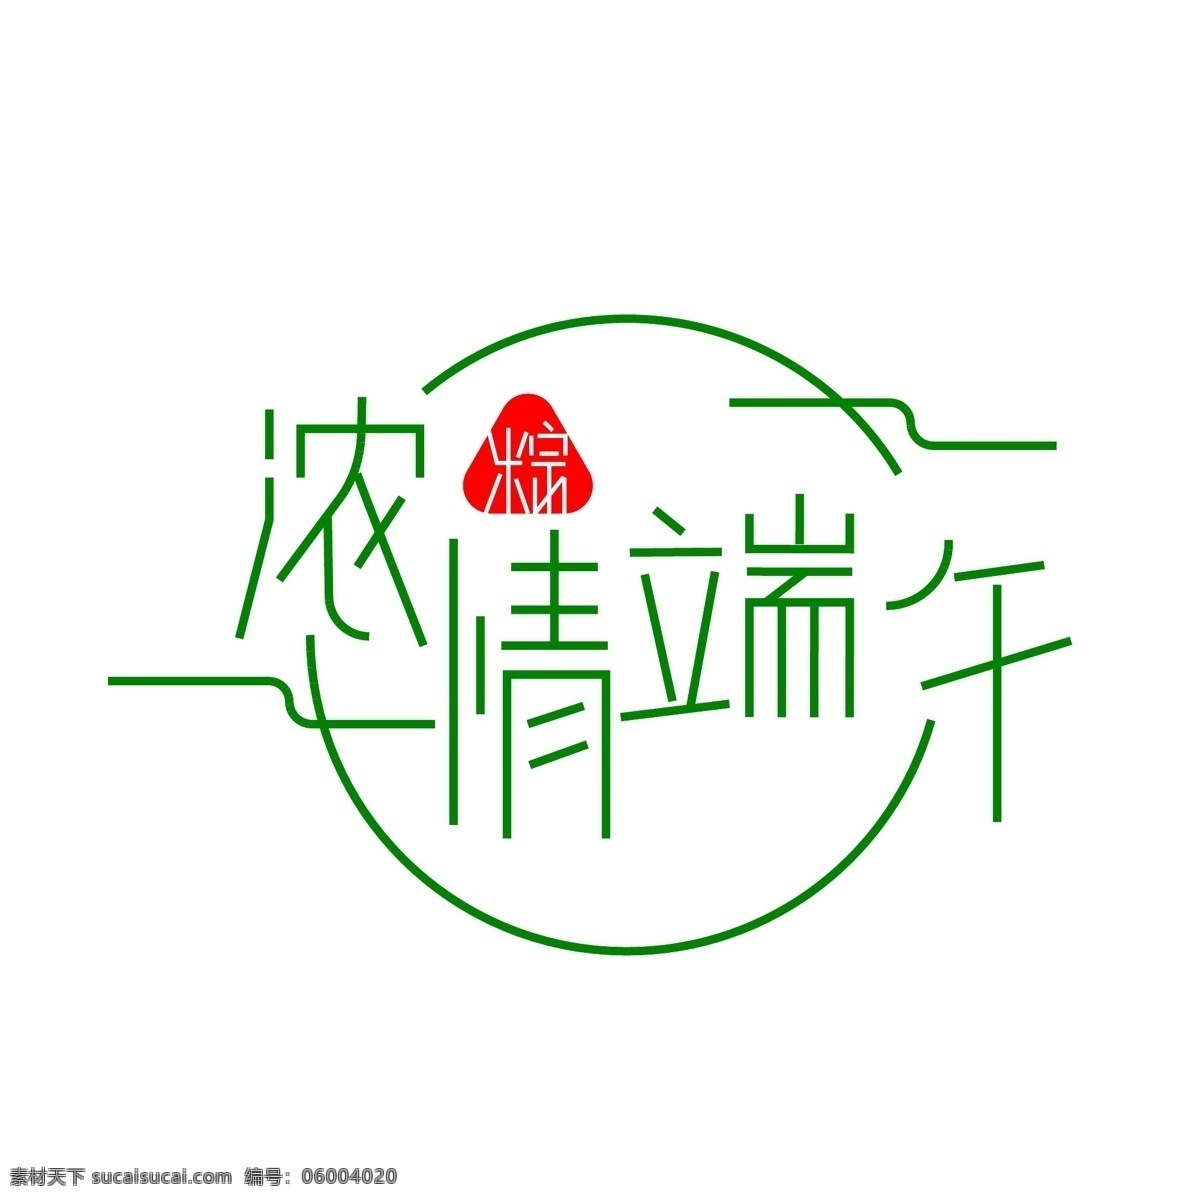 端午节 标题字 艺术字 异形字 绿色字 文字设计 简约设计 排版设计 节日文字 字体 ai源文件 字体设计 文化艺术 传统文化